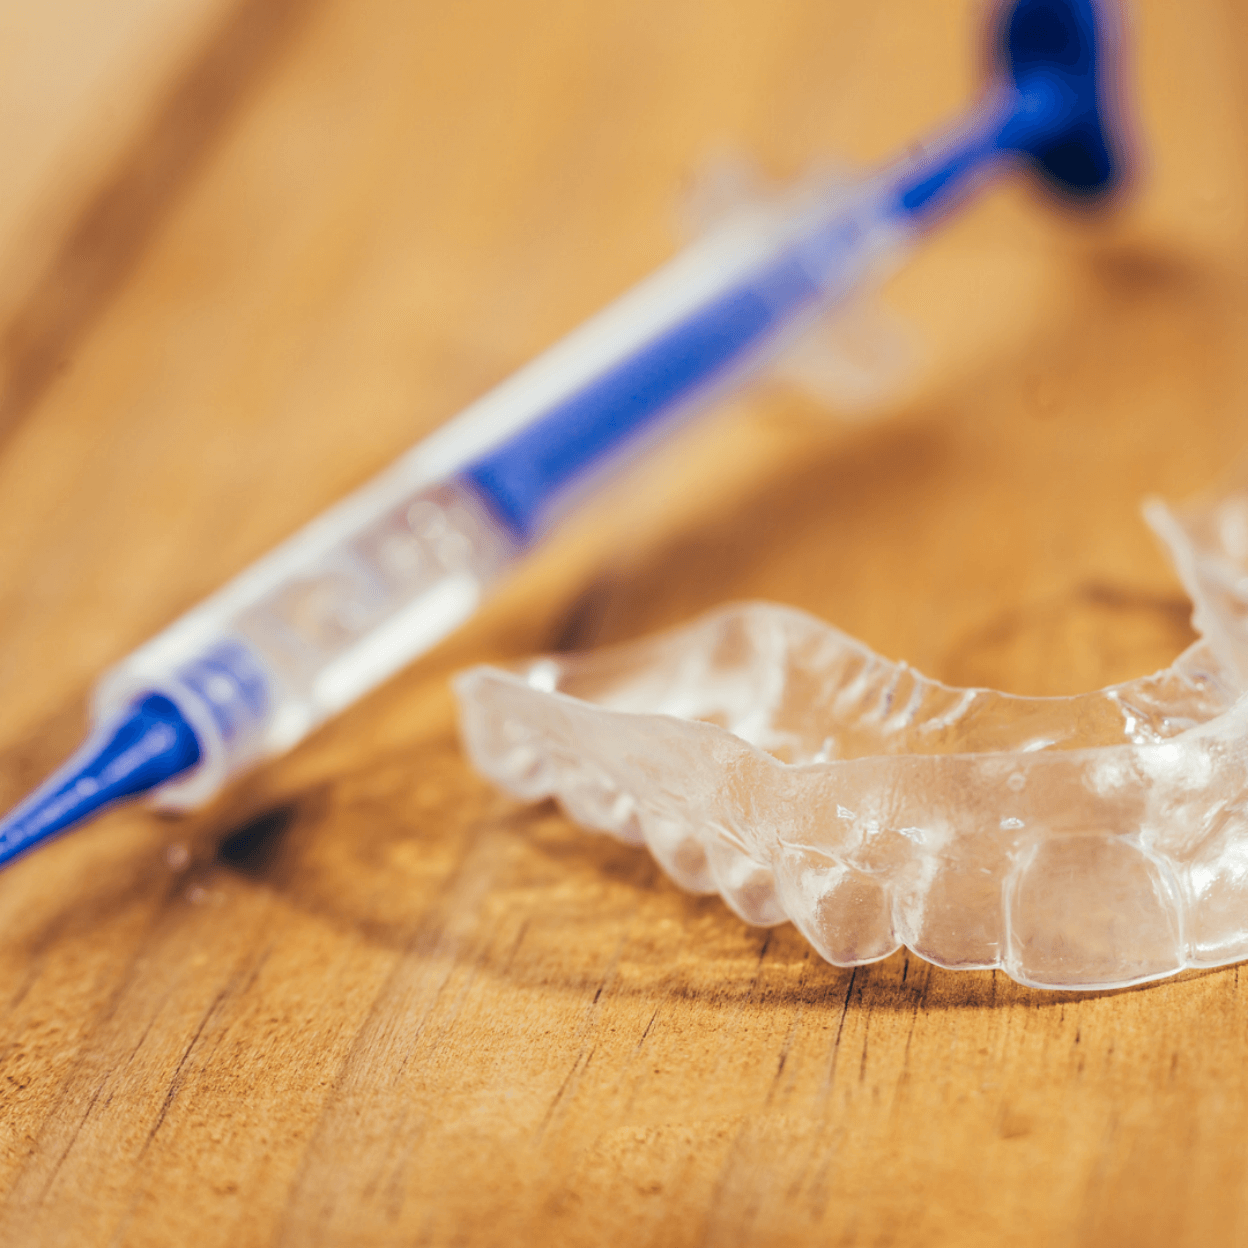 tooth whitening kit